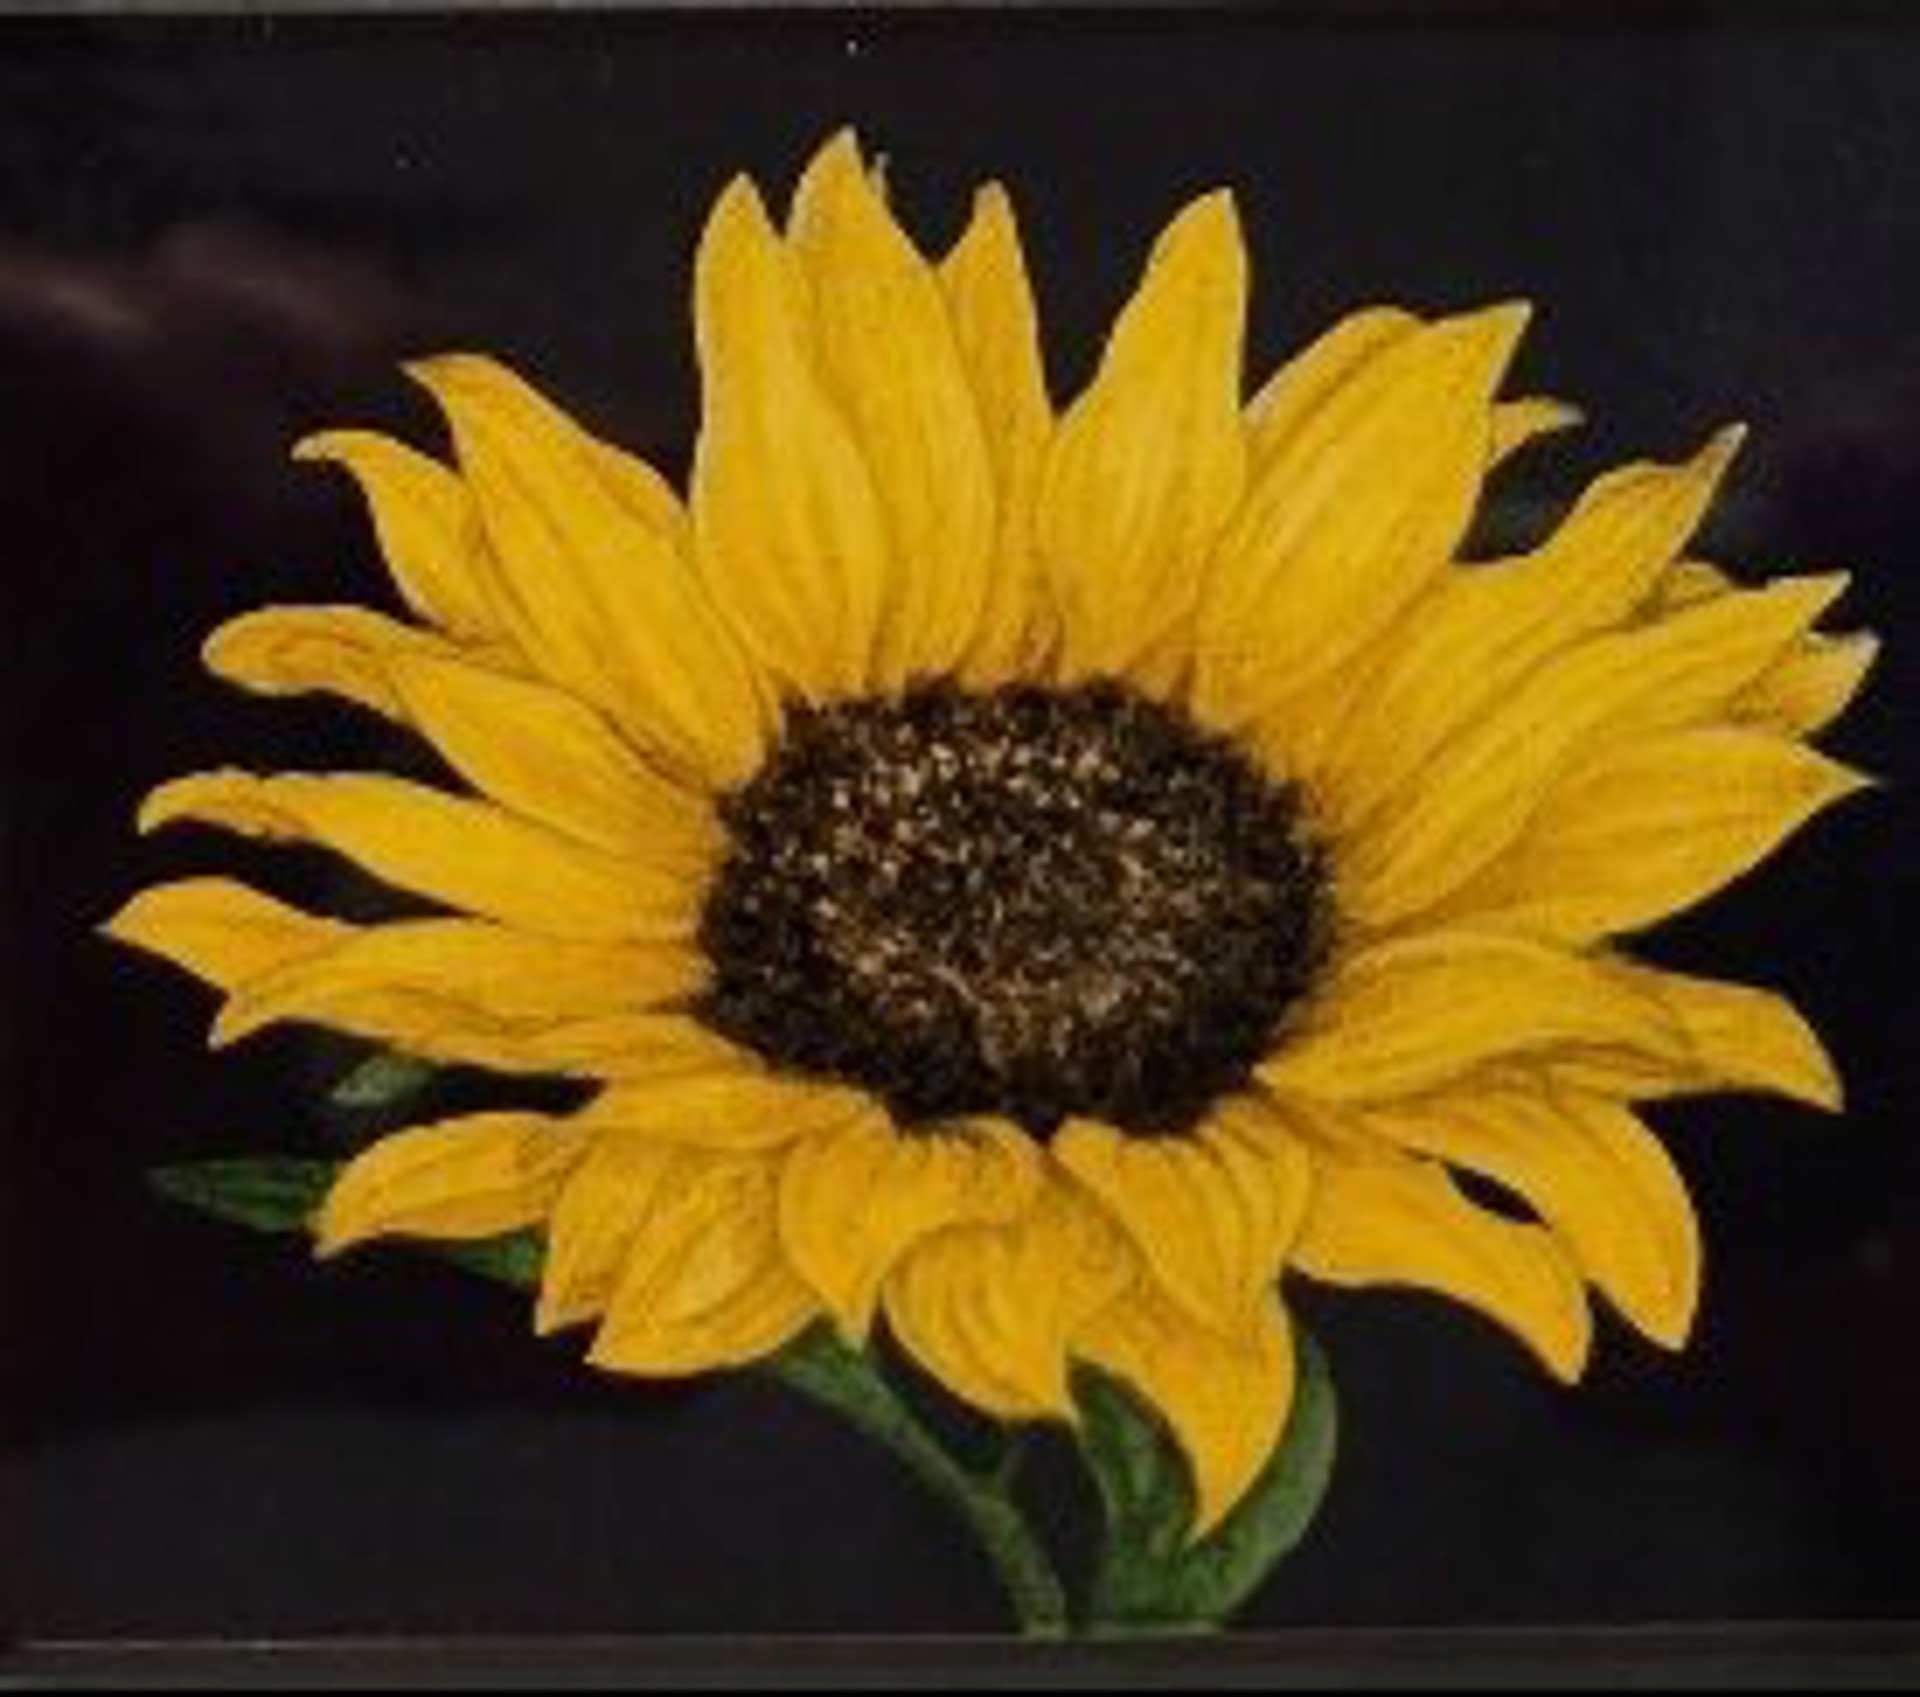 Lynette’s Sunflower by Michael Florian Jilg